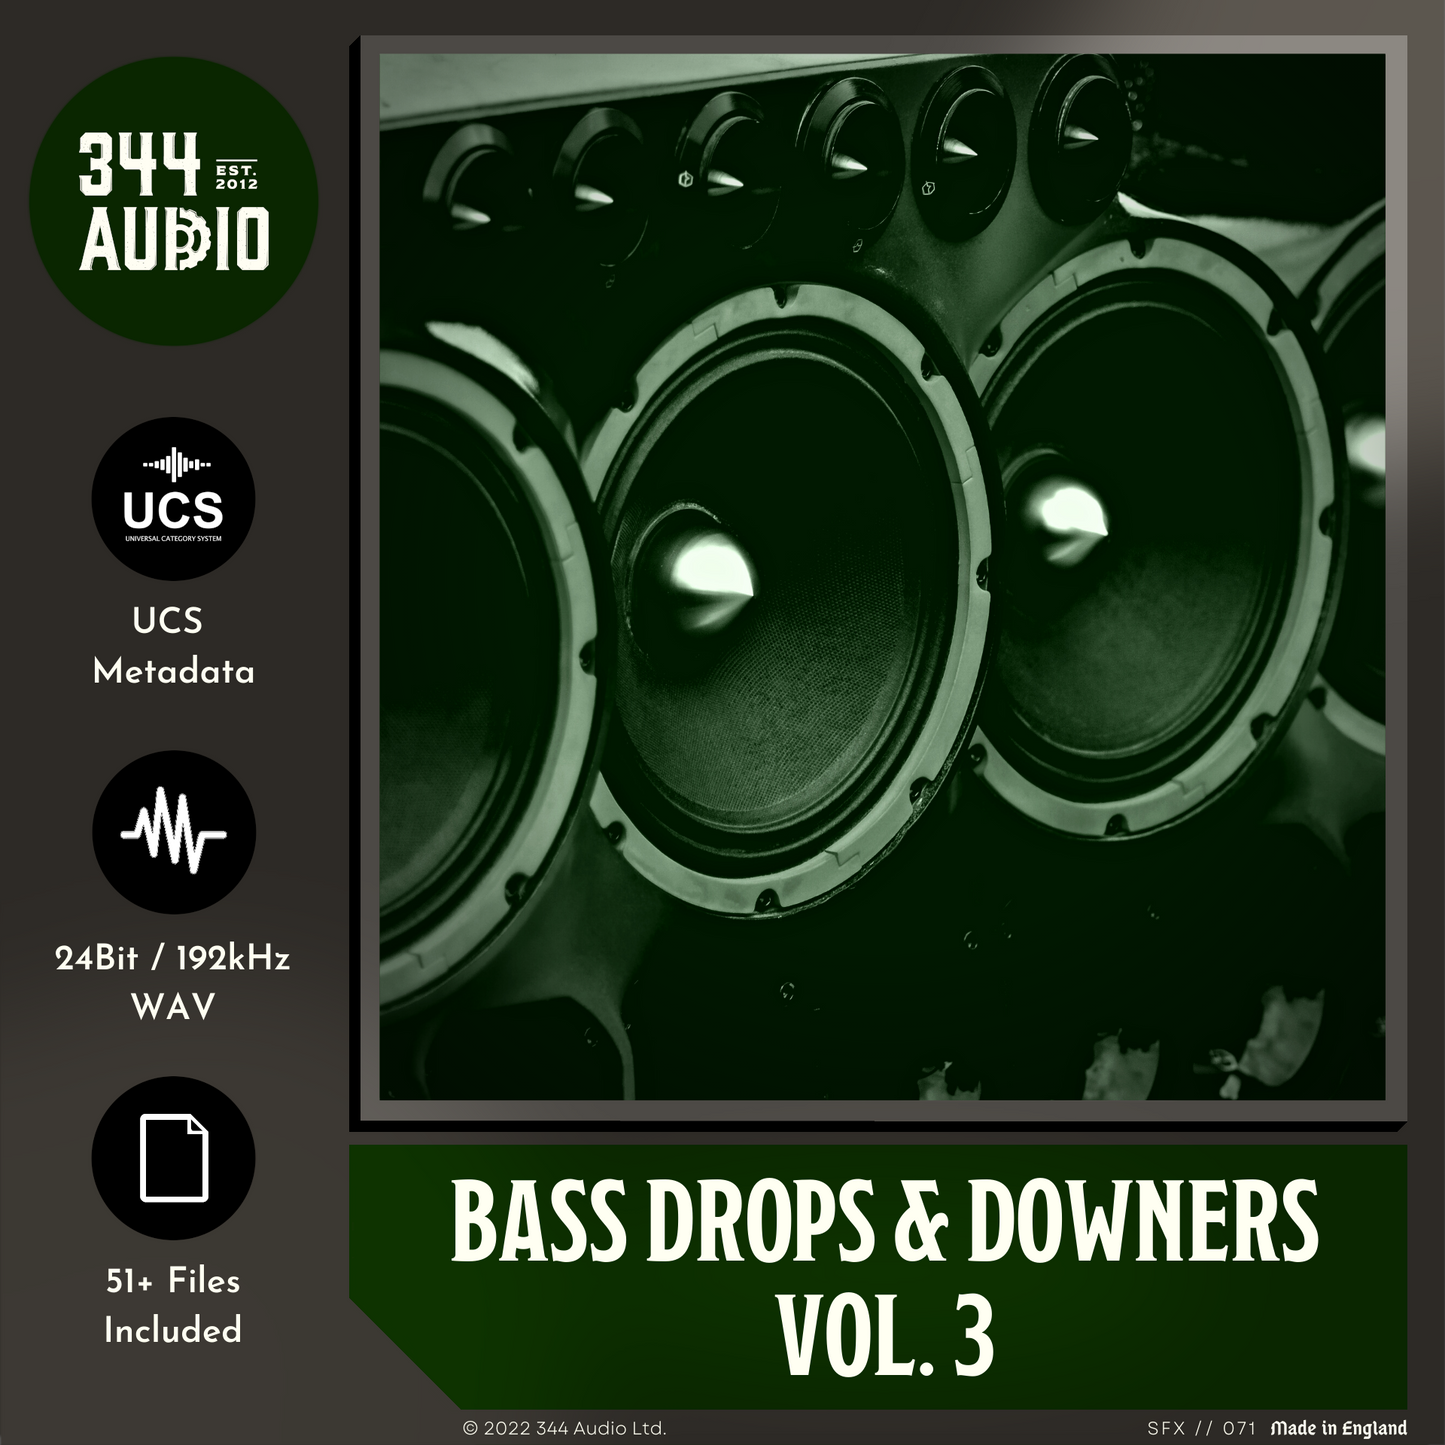 Bass Drops & Downers Vol. 3